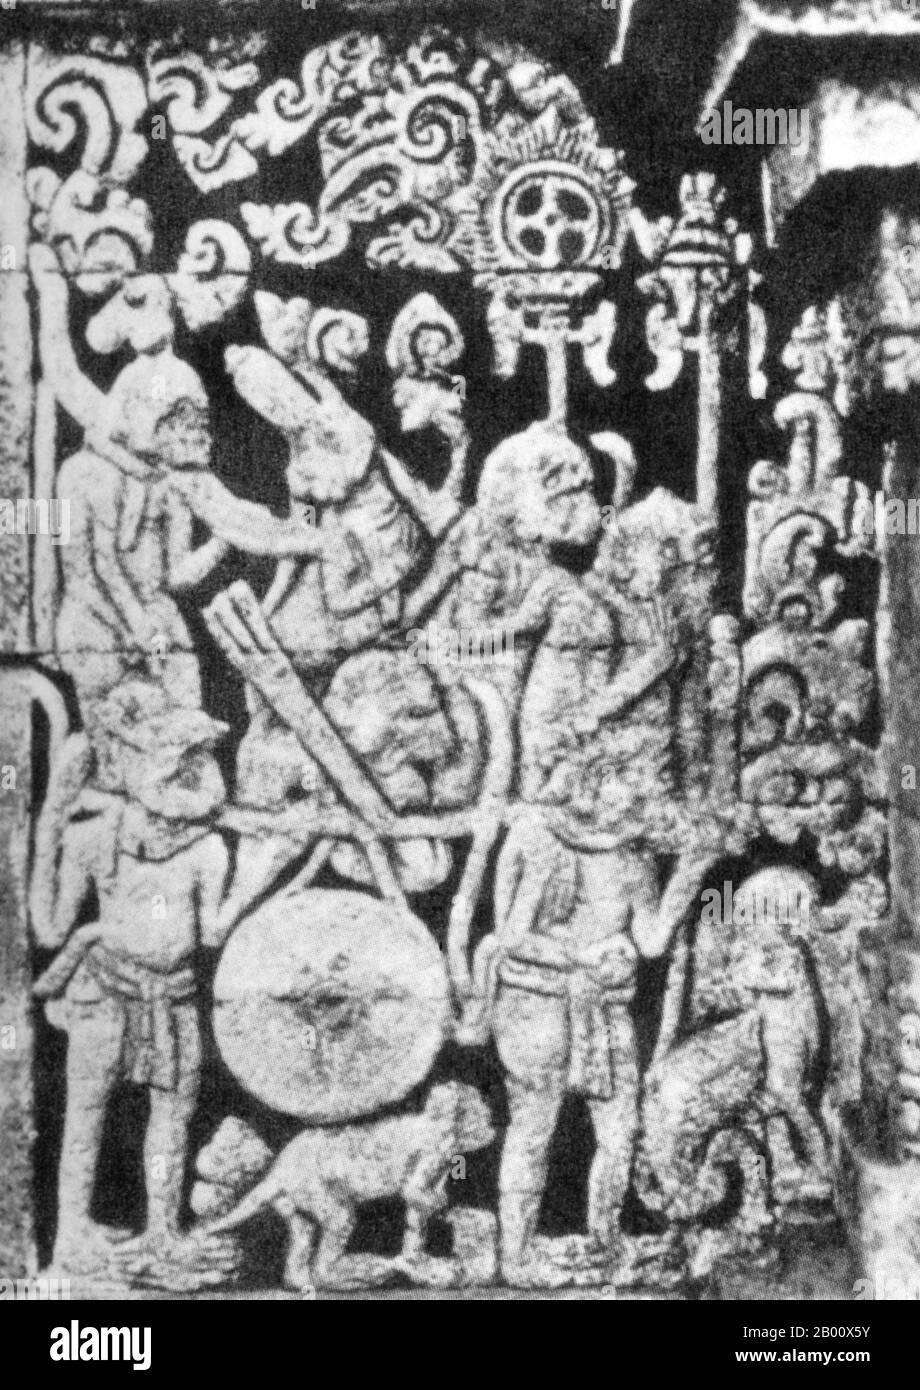 Indonesien: Aus einem Relief aus dem 14. Jahrhundert am javanischen Tempel Candi Panataran zeigt diese Szene aus dem Ramayana die Armee des Affenkönigs Sugiwa, die einen großen gong trägt. Das Ramayana ist eines von zwei alten hinduistischen Epen, das andere ist das Mahabharata. Im Ramayana wird Ramas Frau Sita vom bösen Dämon Ravana entführt und als Geisel nach Lanka gebracht. Sie wird schließlich von Hanuman, dem heldenhaften affengott, gerettet. Stockfoto